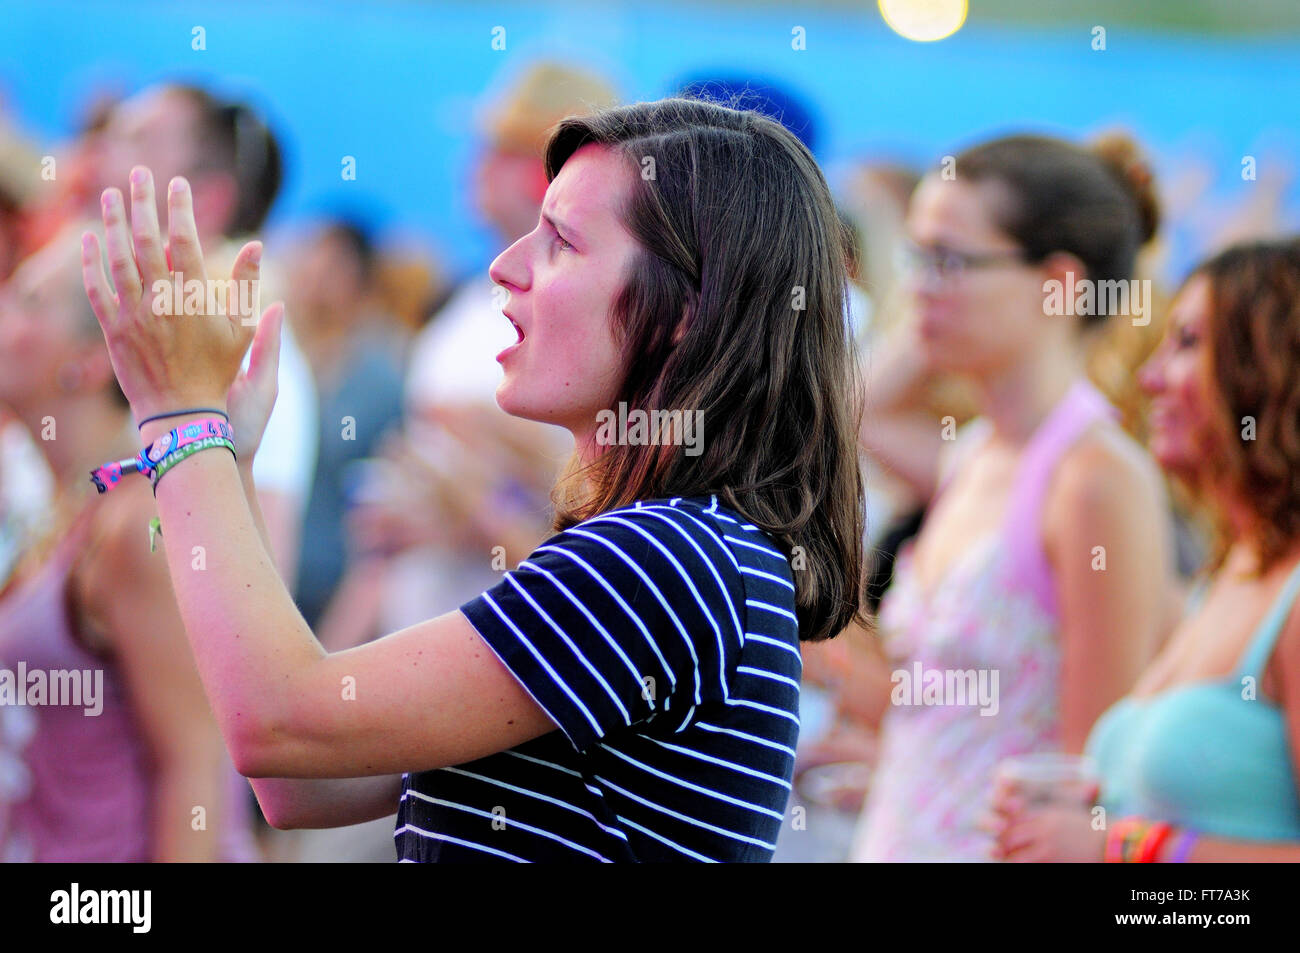 BENICASSIM, ESPAGNE - 19 juillet : une femme de la foule applaudir à FIB (Festival Internacional de Benicassim Festival 2013). Banque D'Images